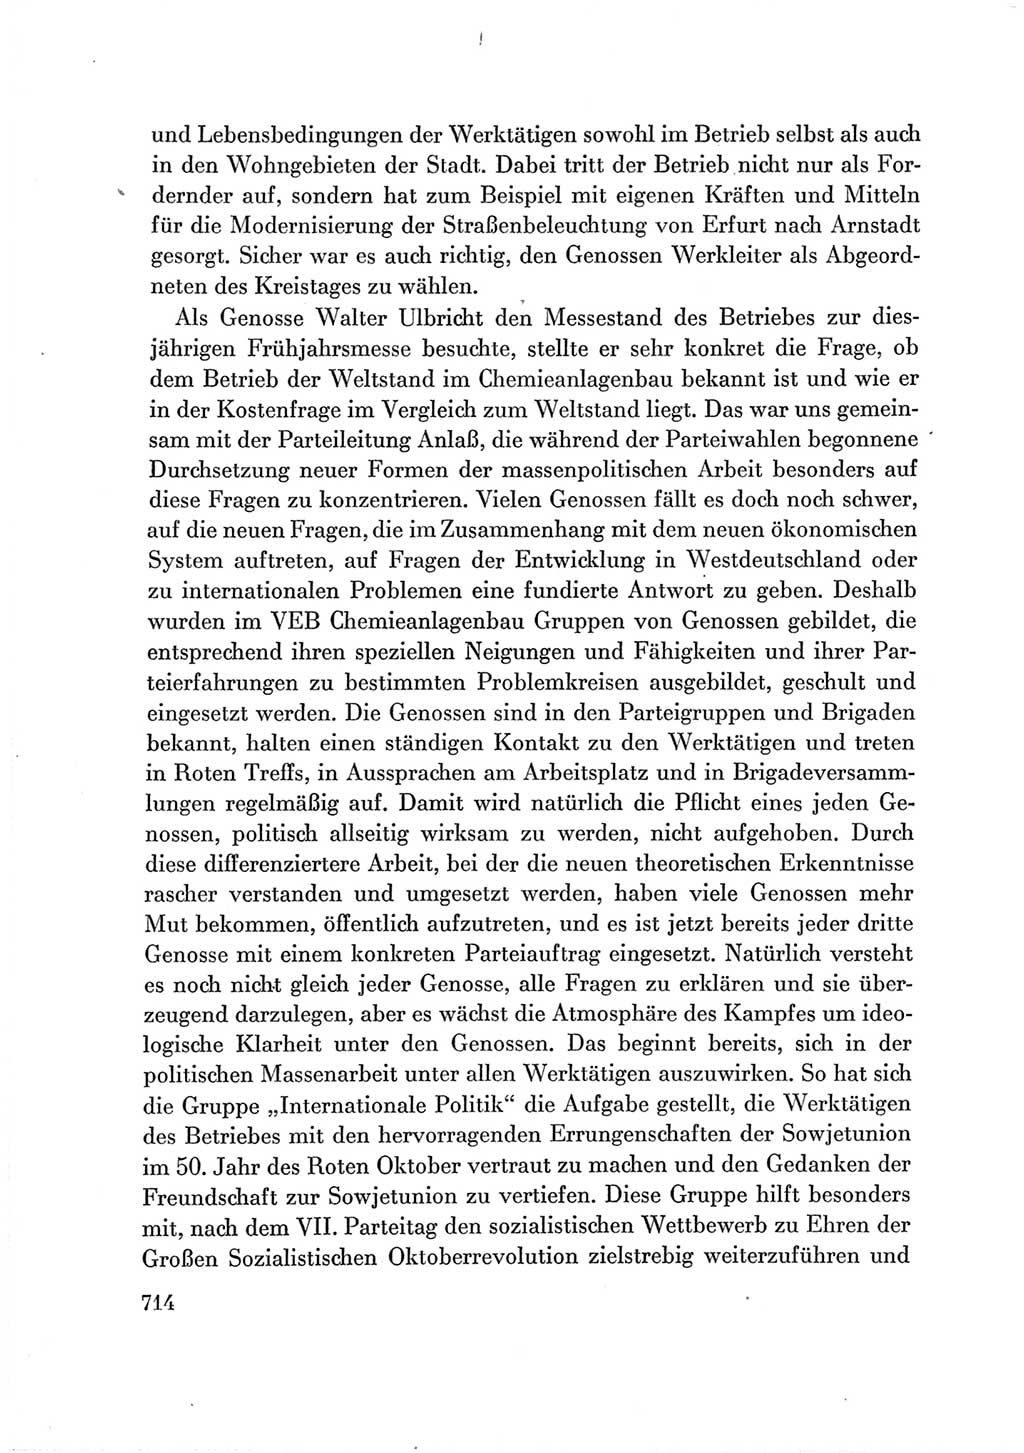 Protokoll der Verhandlungen des Ⅶ. Parteitages der Sozialistischen Einheitspartei Deutschlands (SED) [Deutsche Demokratische Republik (DDR)] 1967, Band Ⅲ, Seite 714 (Prot. Verh. Ⅶ. PT SED DDR 1967, Bd. Ⅲ, S. 714)